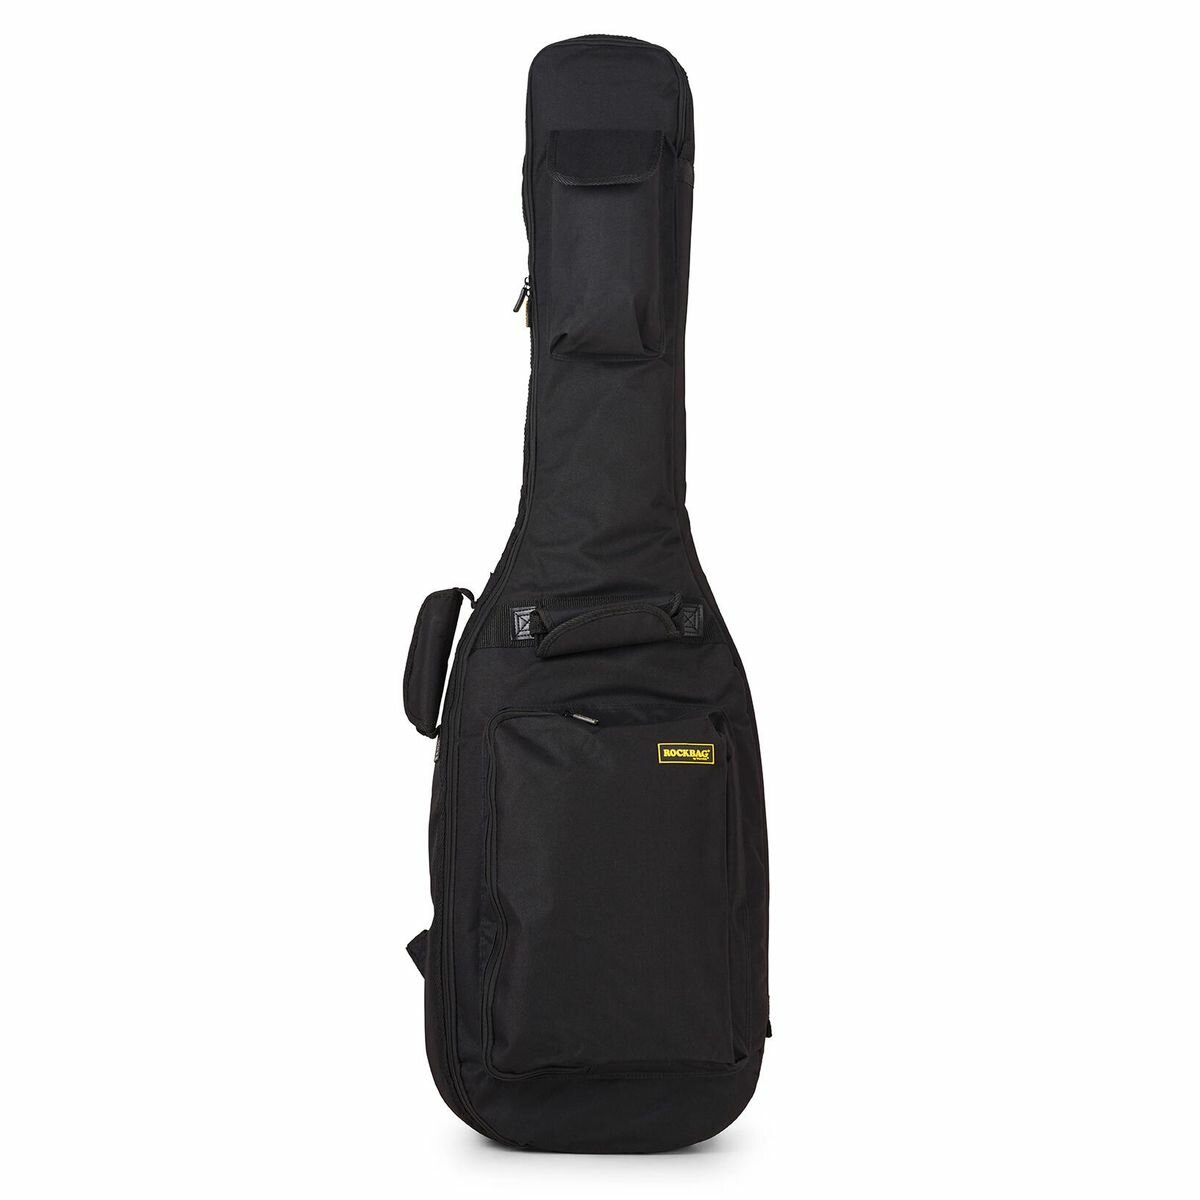 Rockbag RB 20515 B/ PLUS чехол для бас гитары серия Student Plus подкладка 10 мм+уплотнитель 5 мм